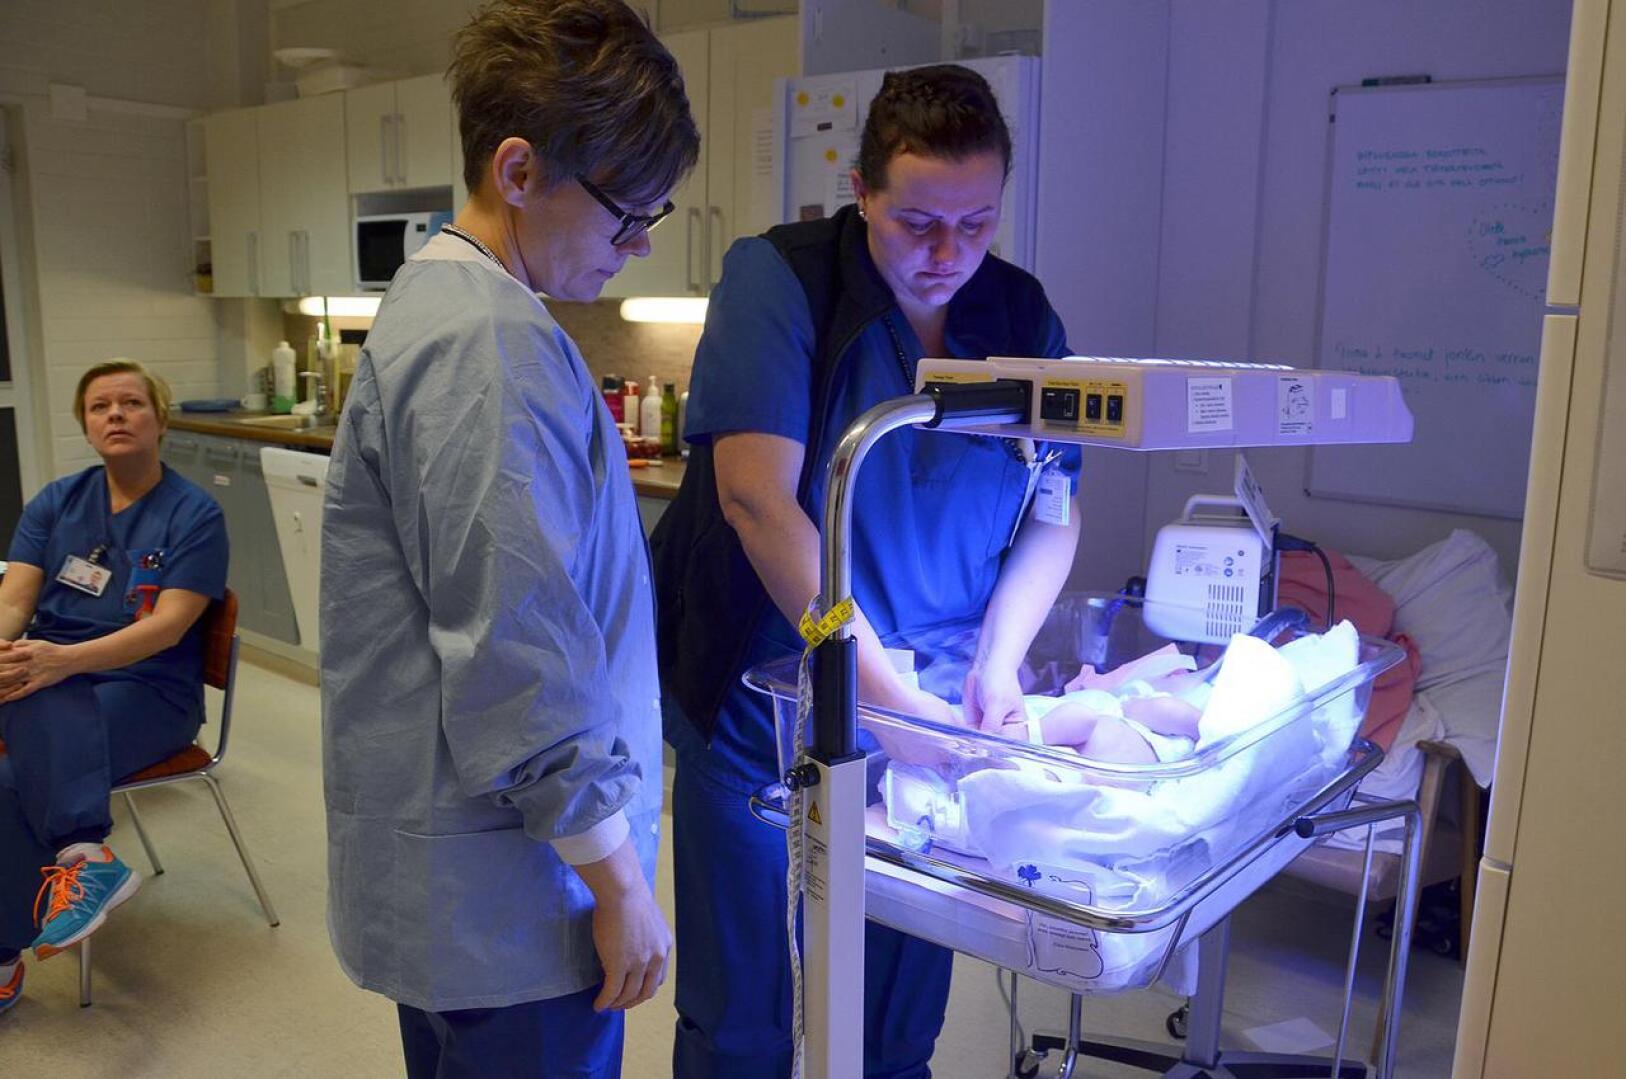 Oulaskankaan synnytysosasto suljettiin 17. joulukuuta. Viimeisiä Oulaskankaan vauvoja hoitamassa lastenhoitaja Taina Impola ja kätilö Marjo Kontinaho.